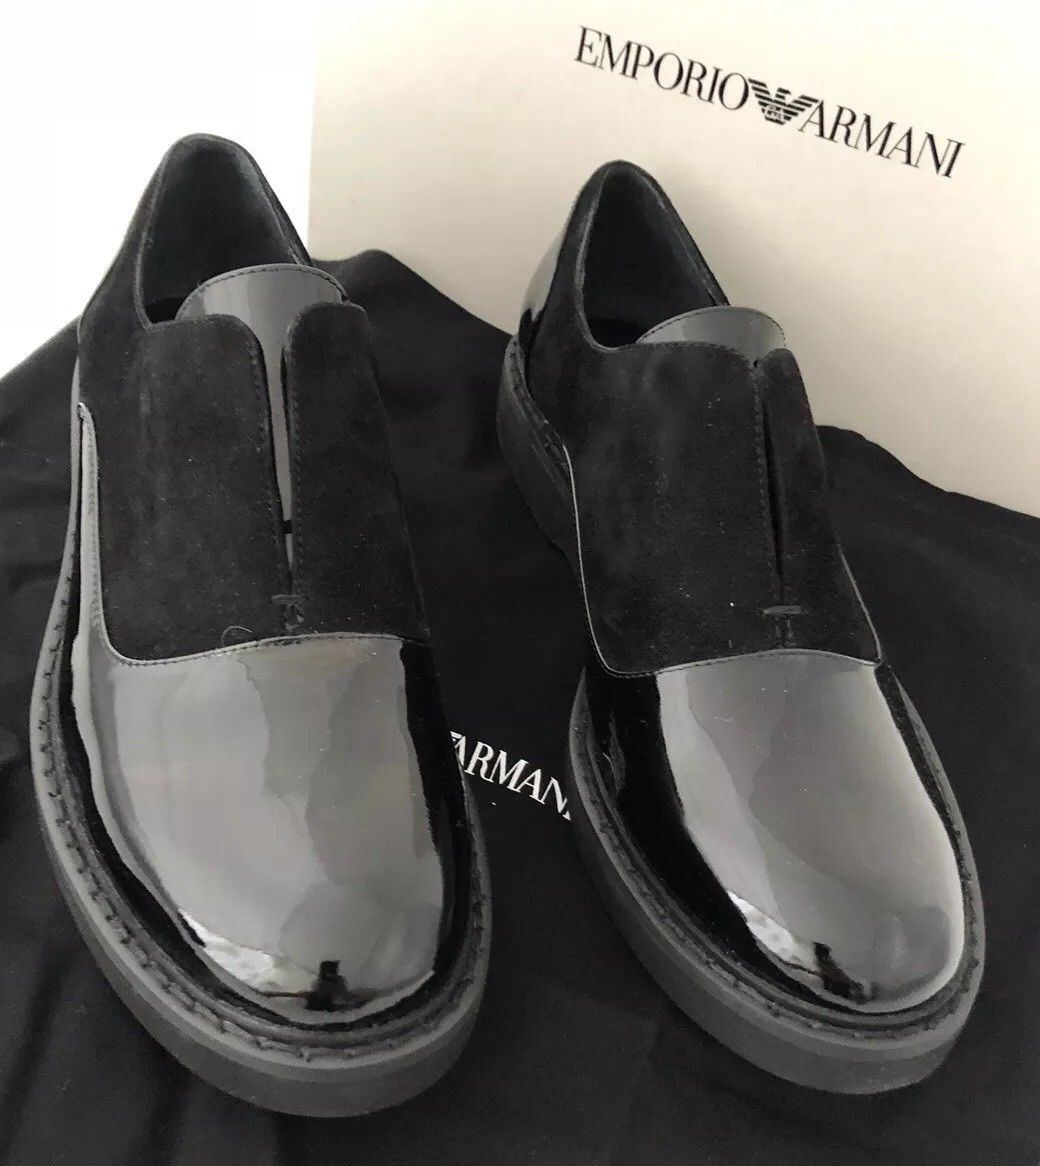 armani leather shoes